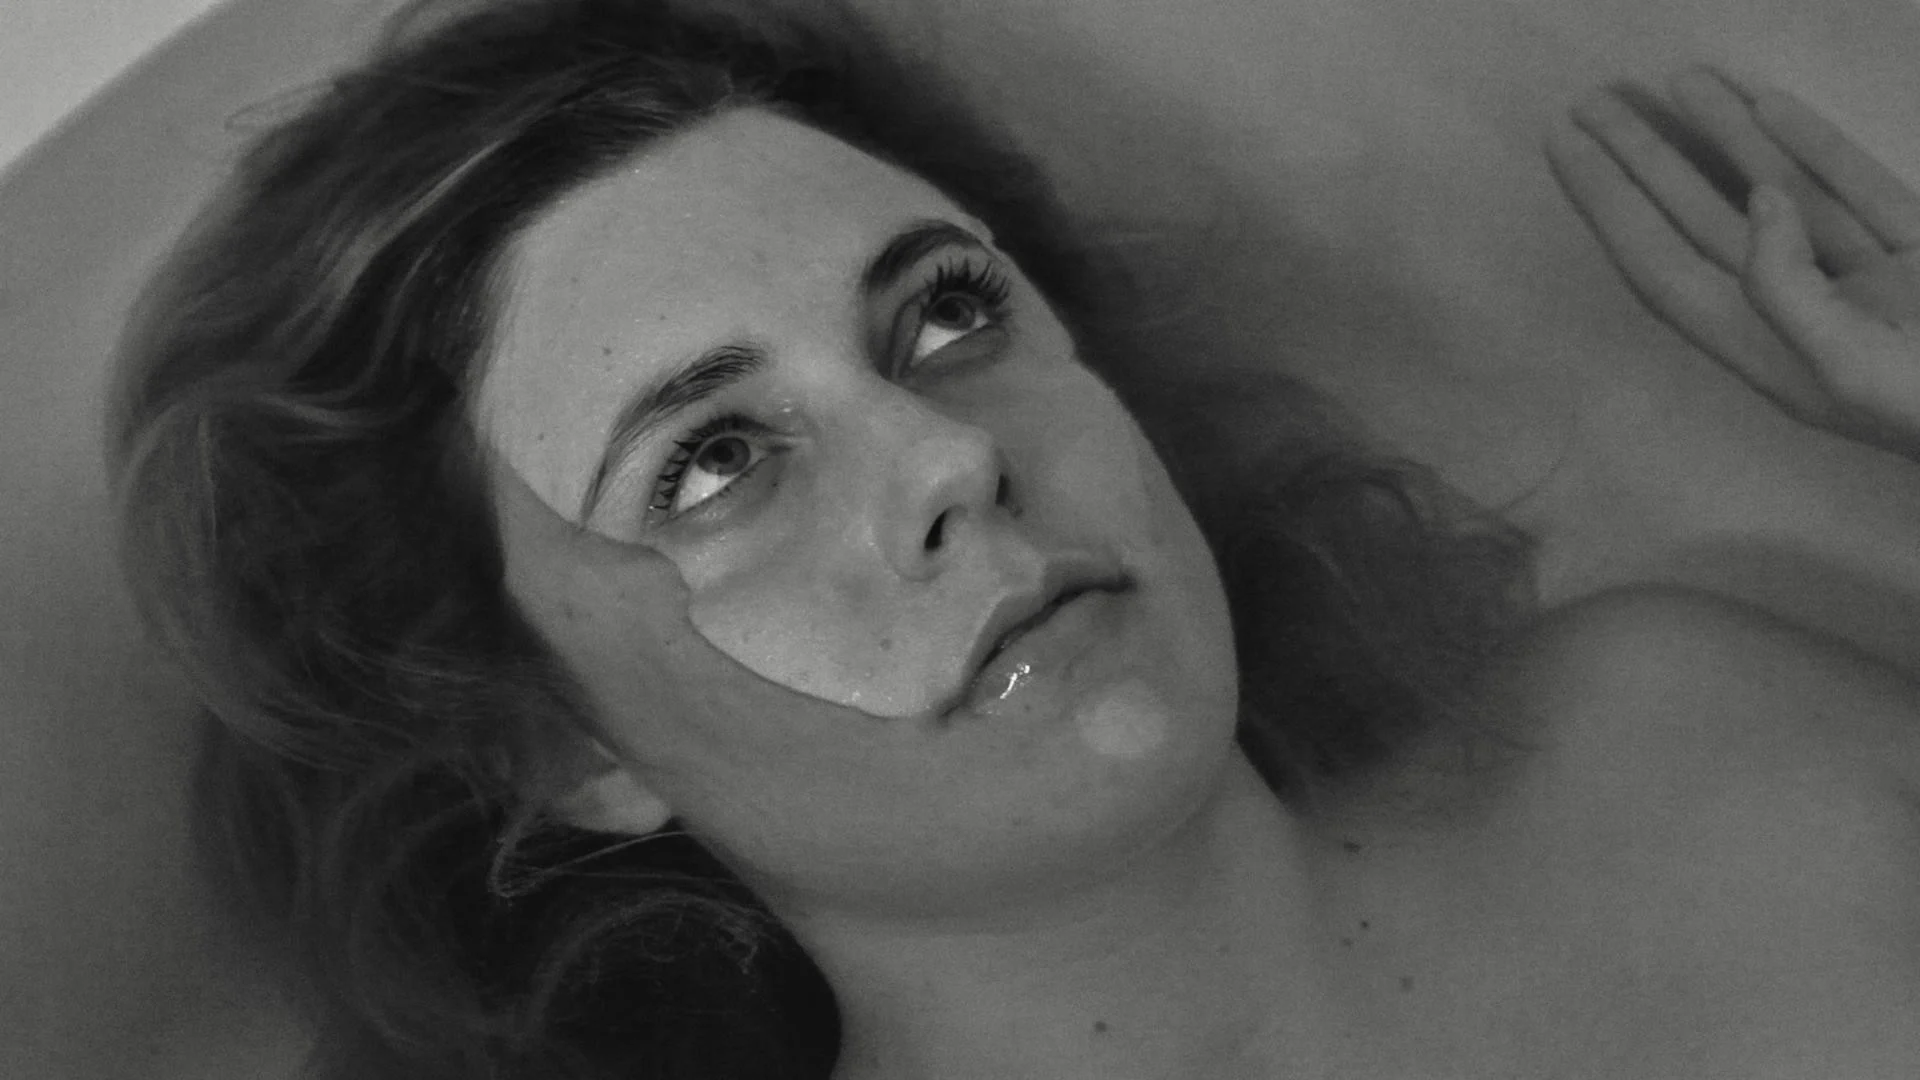 Greta Gerwig as Frances taking a bath at her parents house. Baumbach, Noah, Dir. Frances Ha. 2012.